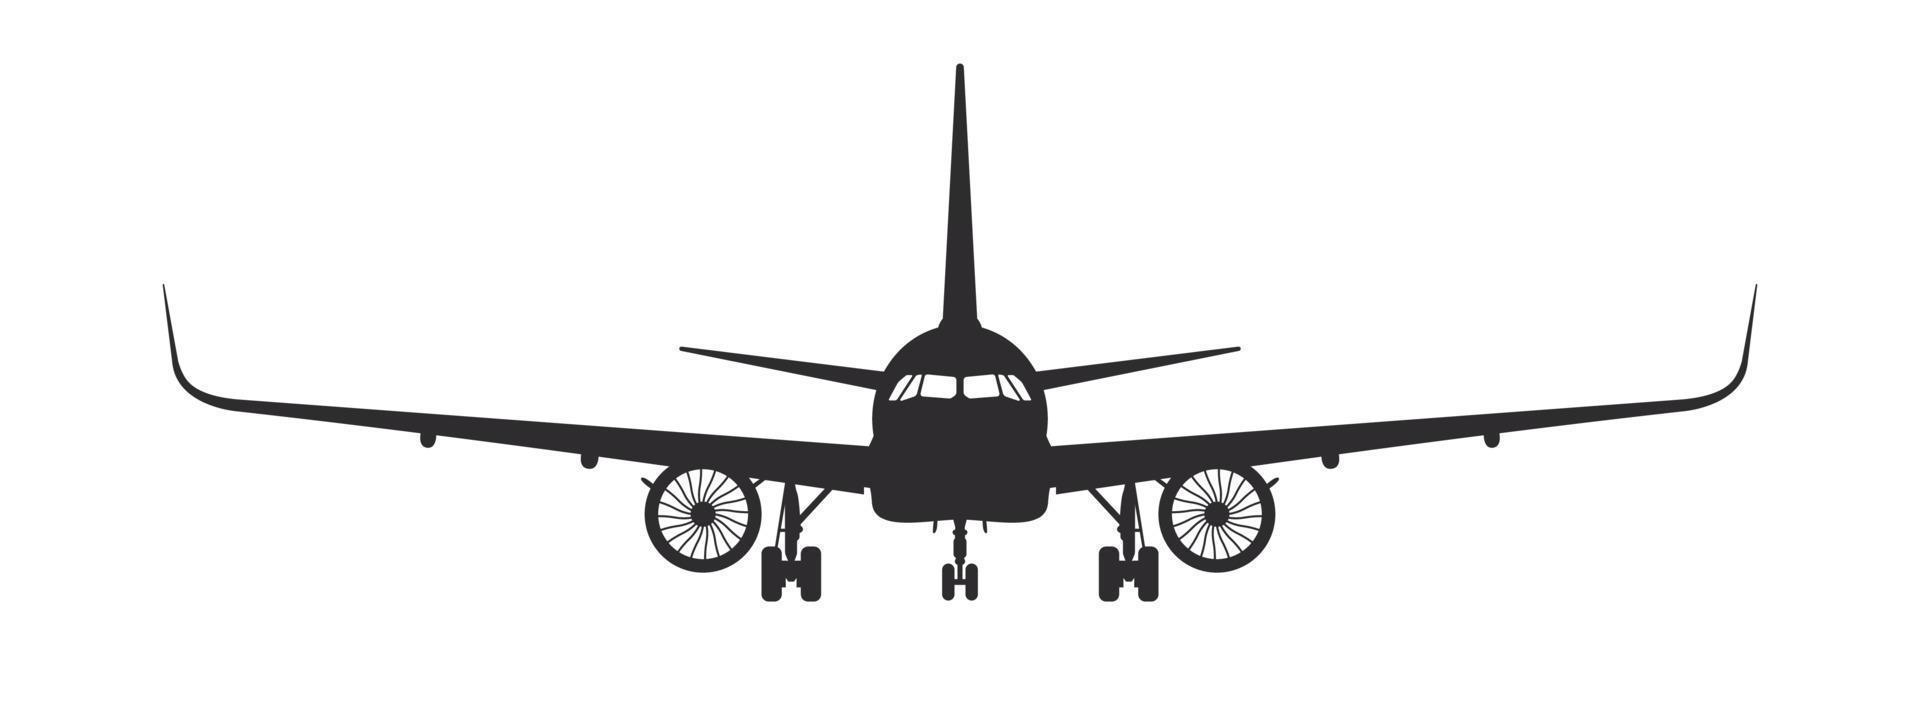 avião. vista frontal da silhueta do avião. conceito de avião de passageiros. imagem vetorial vetor